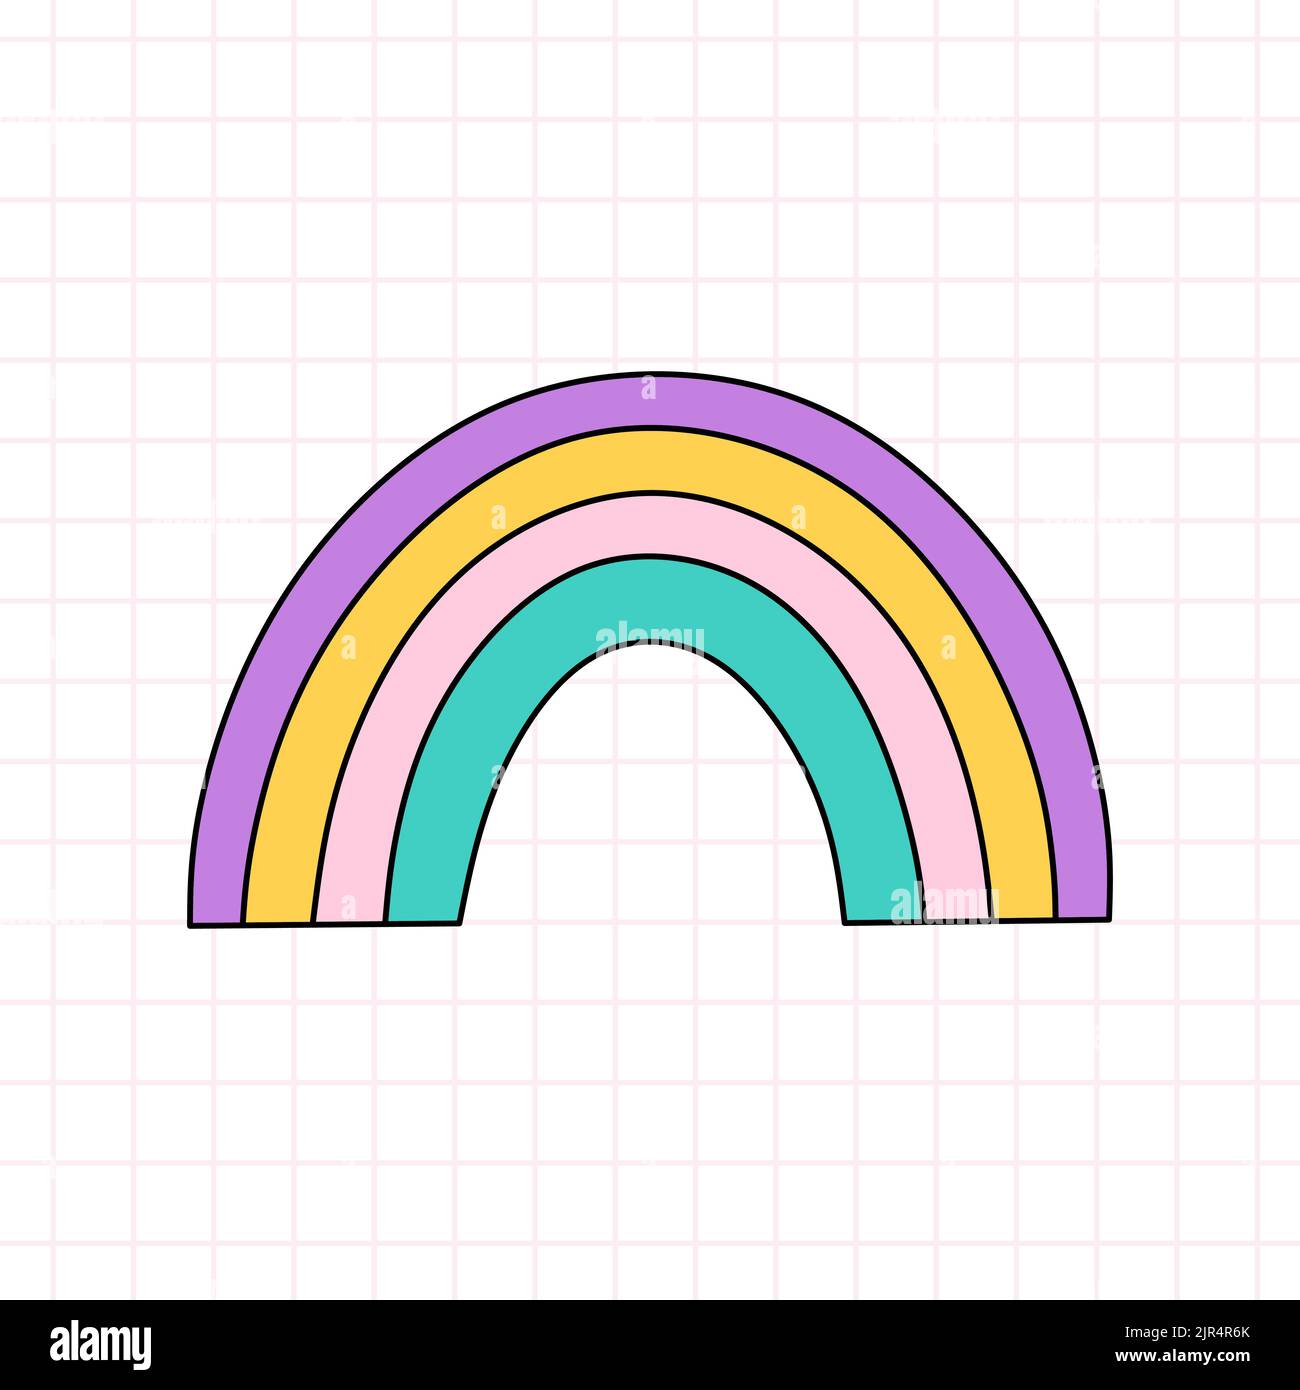 Carino arcobaleno luminoso nello stile della 90s. Disegno vettoriale a mano di un doodle isolato su sfondo bianco. Nostalgia per il 1990s. Perfetto per carte, decorazioni, logo Illustrazione Vettoriale